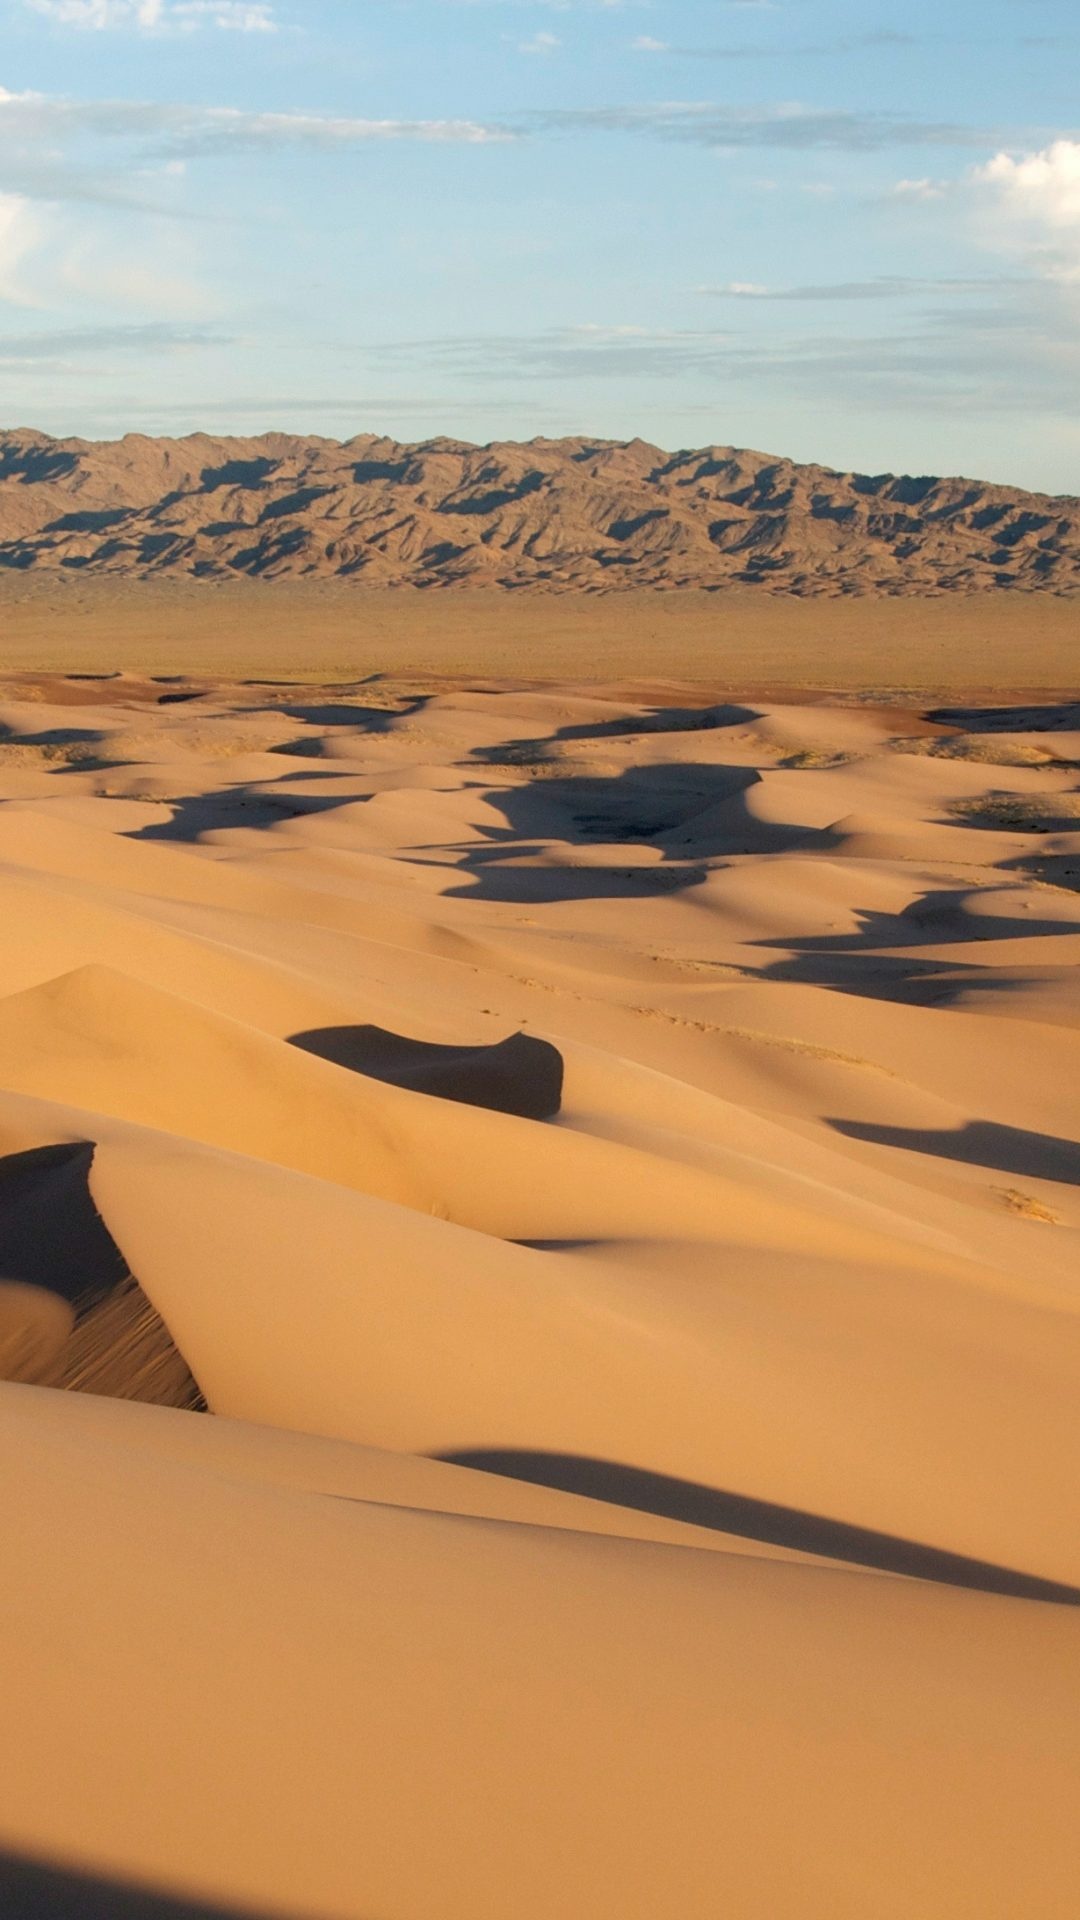 Gobi Desert, 4K wallpaper, Stunning visuals, High-definition beauty, 1080x1920 Full HD Handy